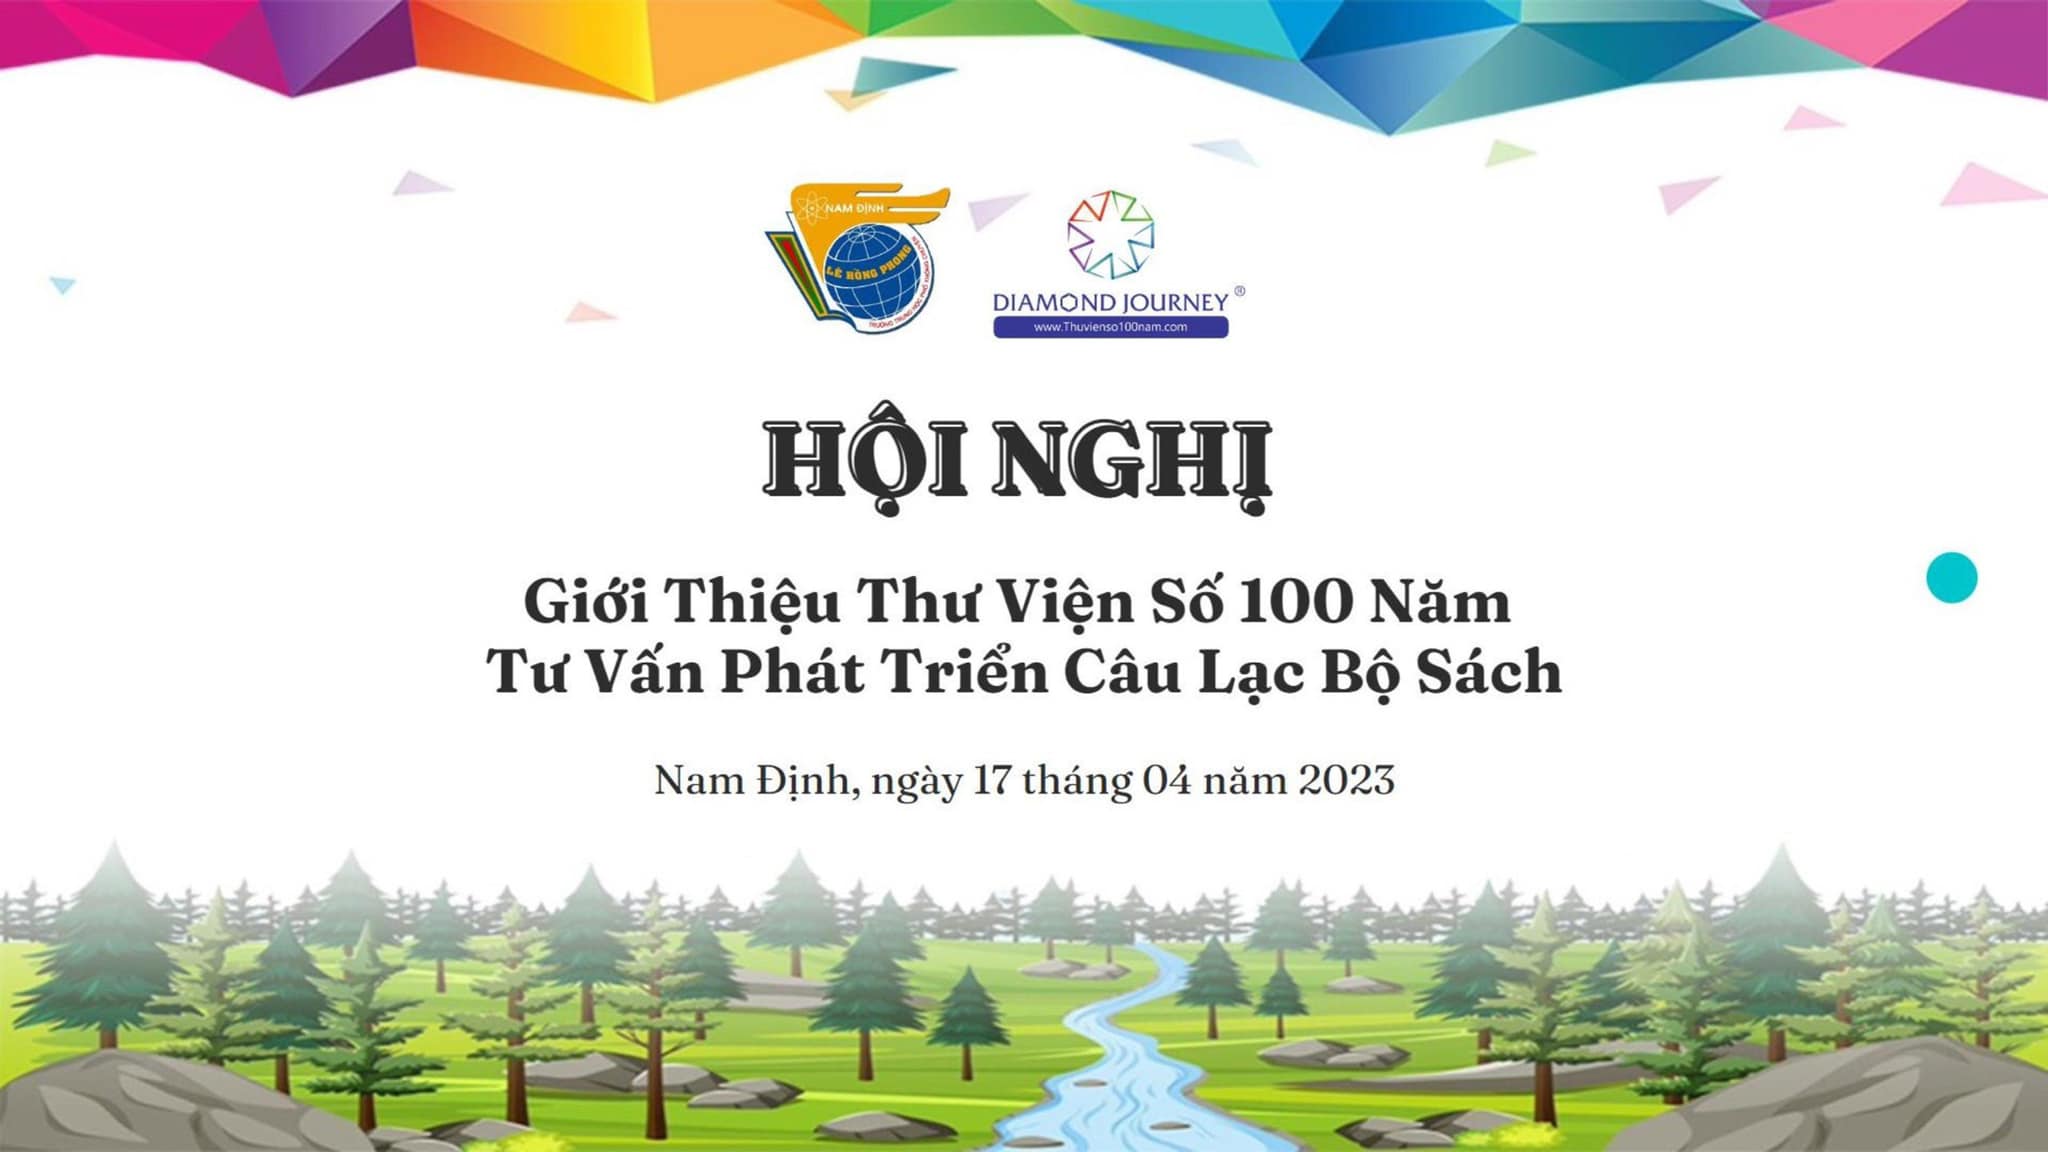 Trường THPT chuyên Lê Hồng Phong được trao tặng 2000 thẻ "Thư viện số 100 năm"